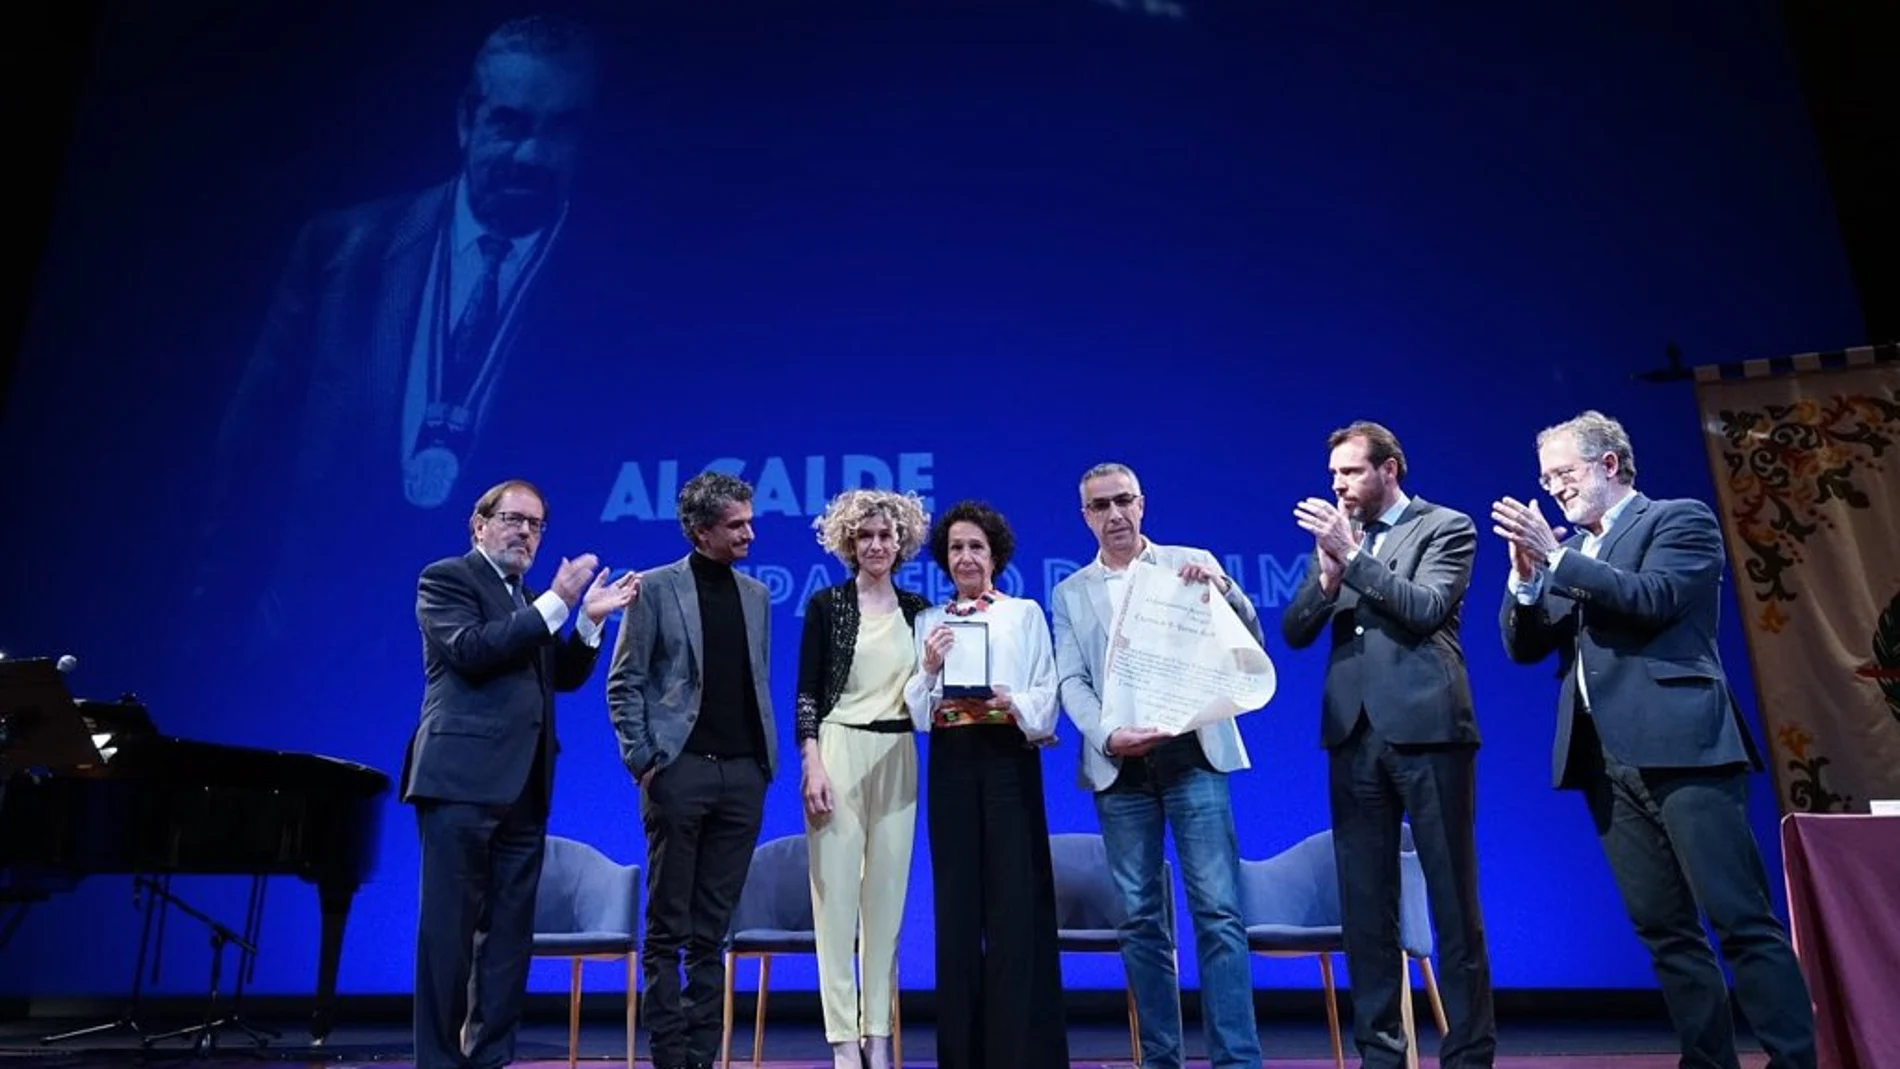 Los familiares de Tomás Rodríguez Bolaños reciben la Medalla de Oro del Ayuntamiento de Valladolid de manos del alcalde Óscar Puente